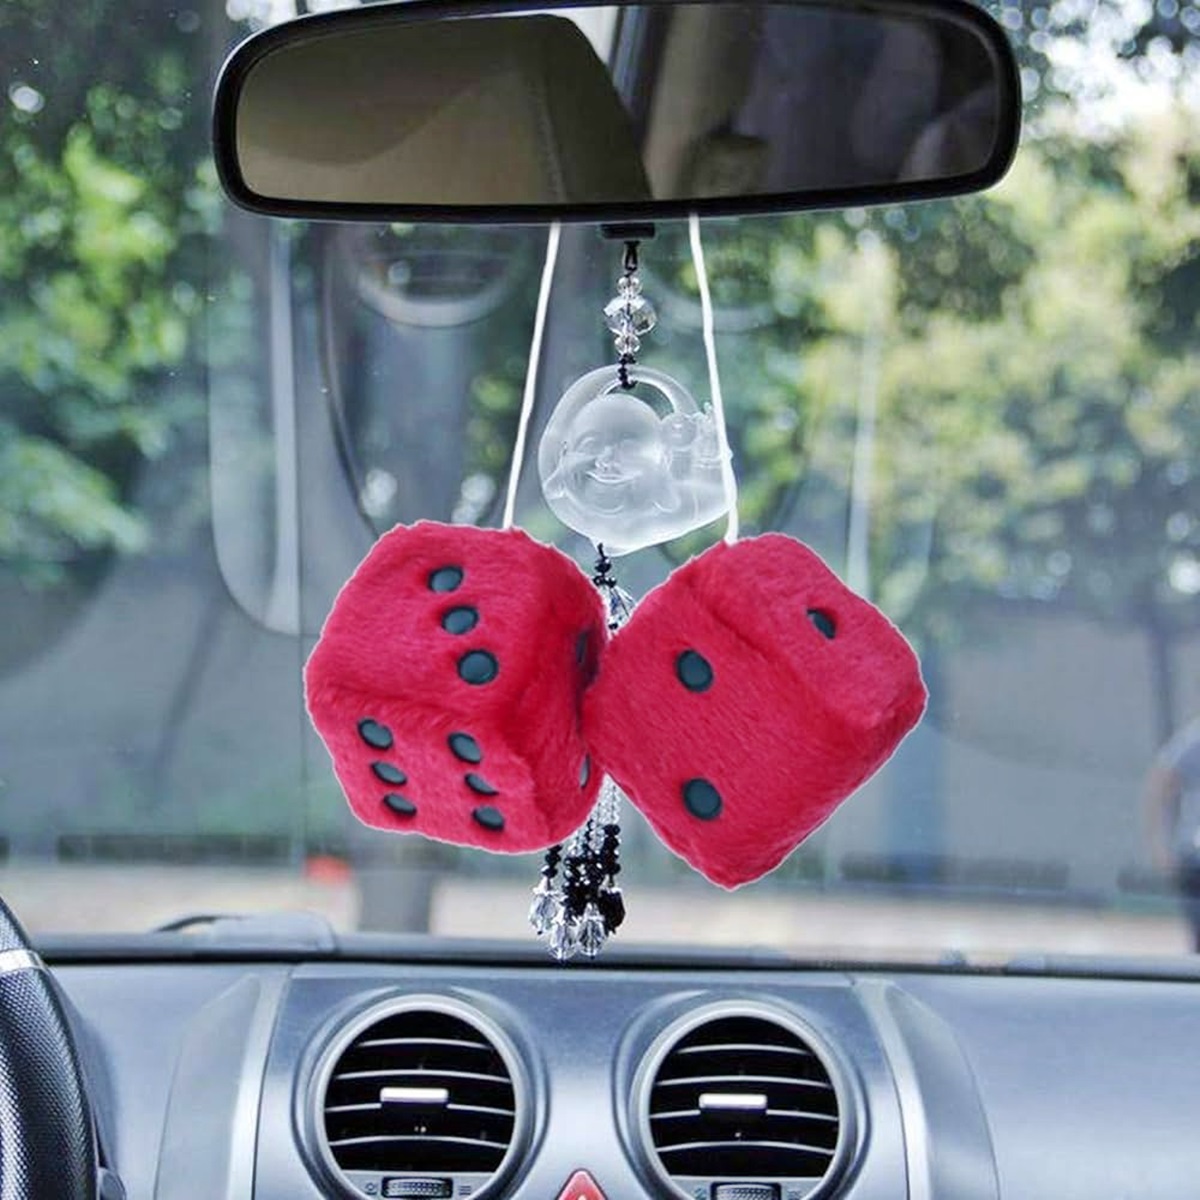 Fuzzy Dice For Car Auto Rear Mirror Dice Pendant Small Decorative